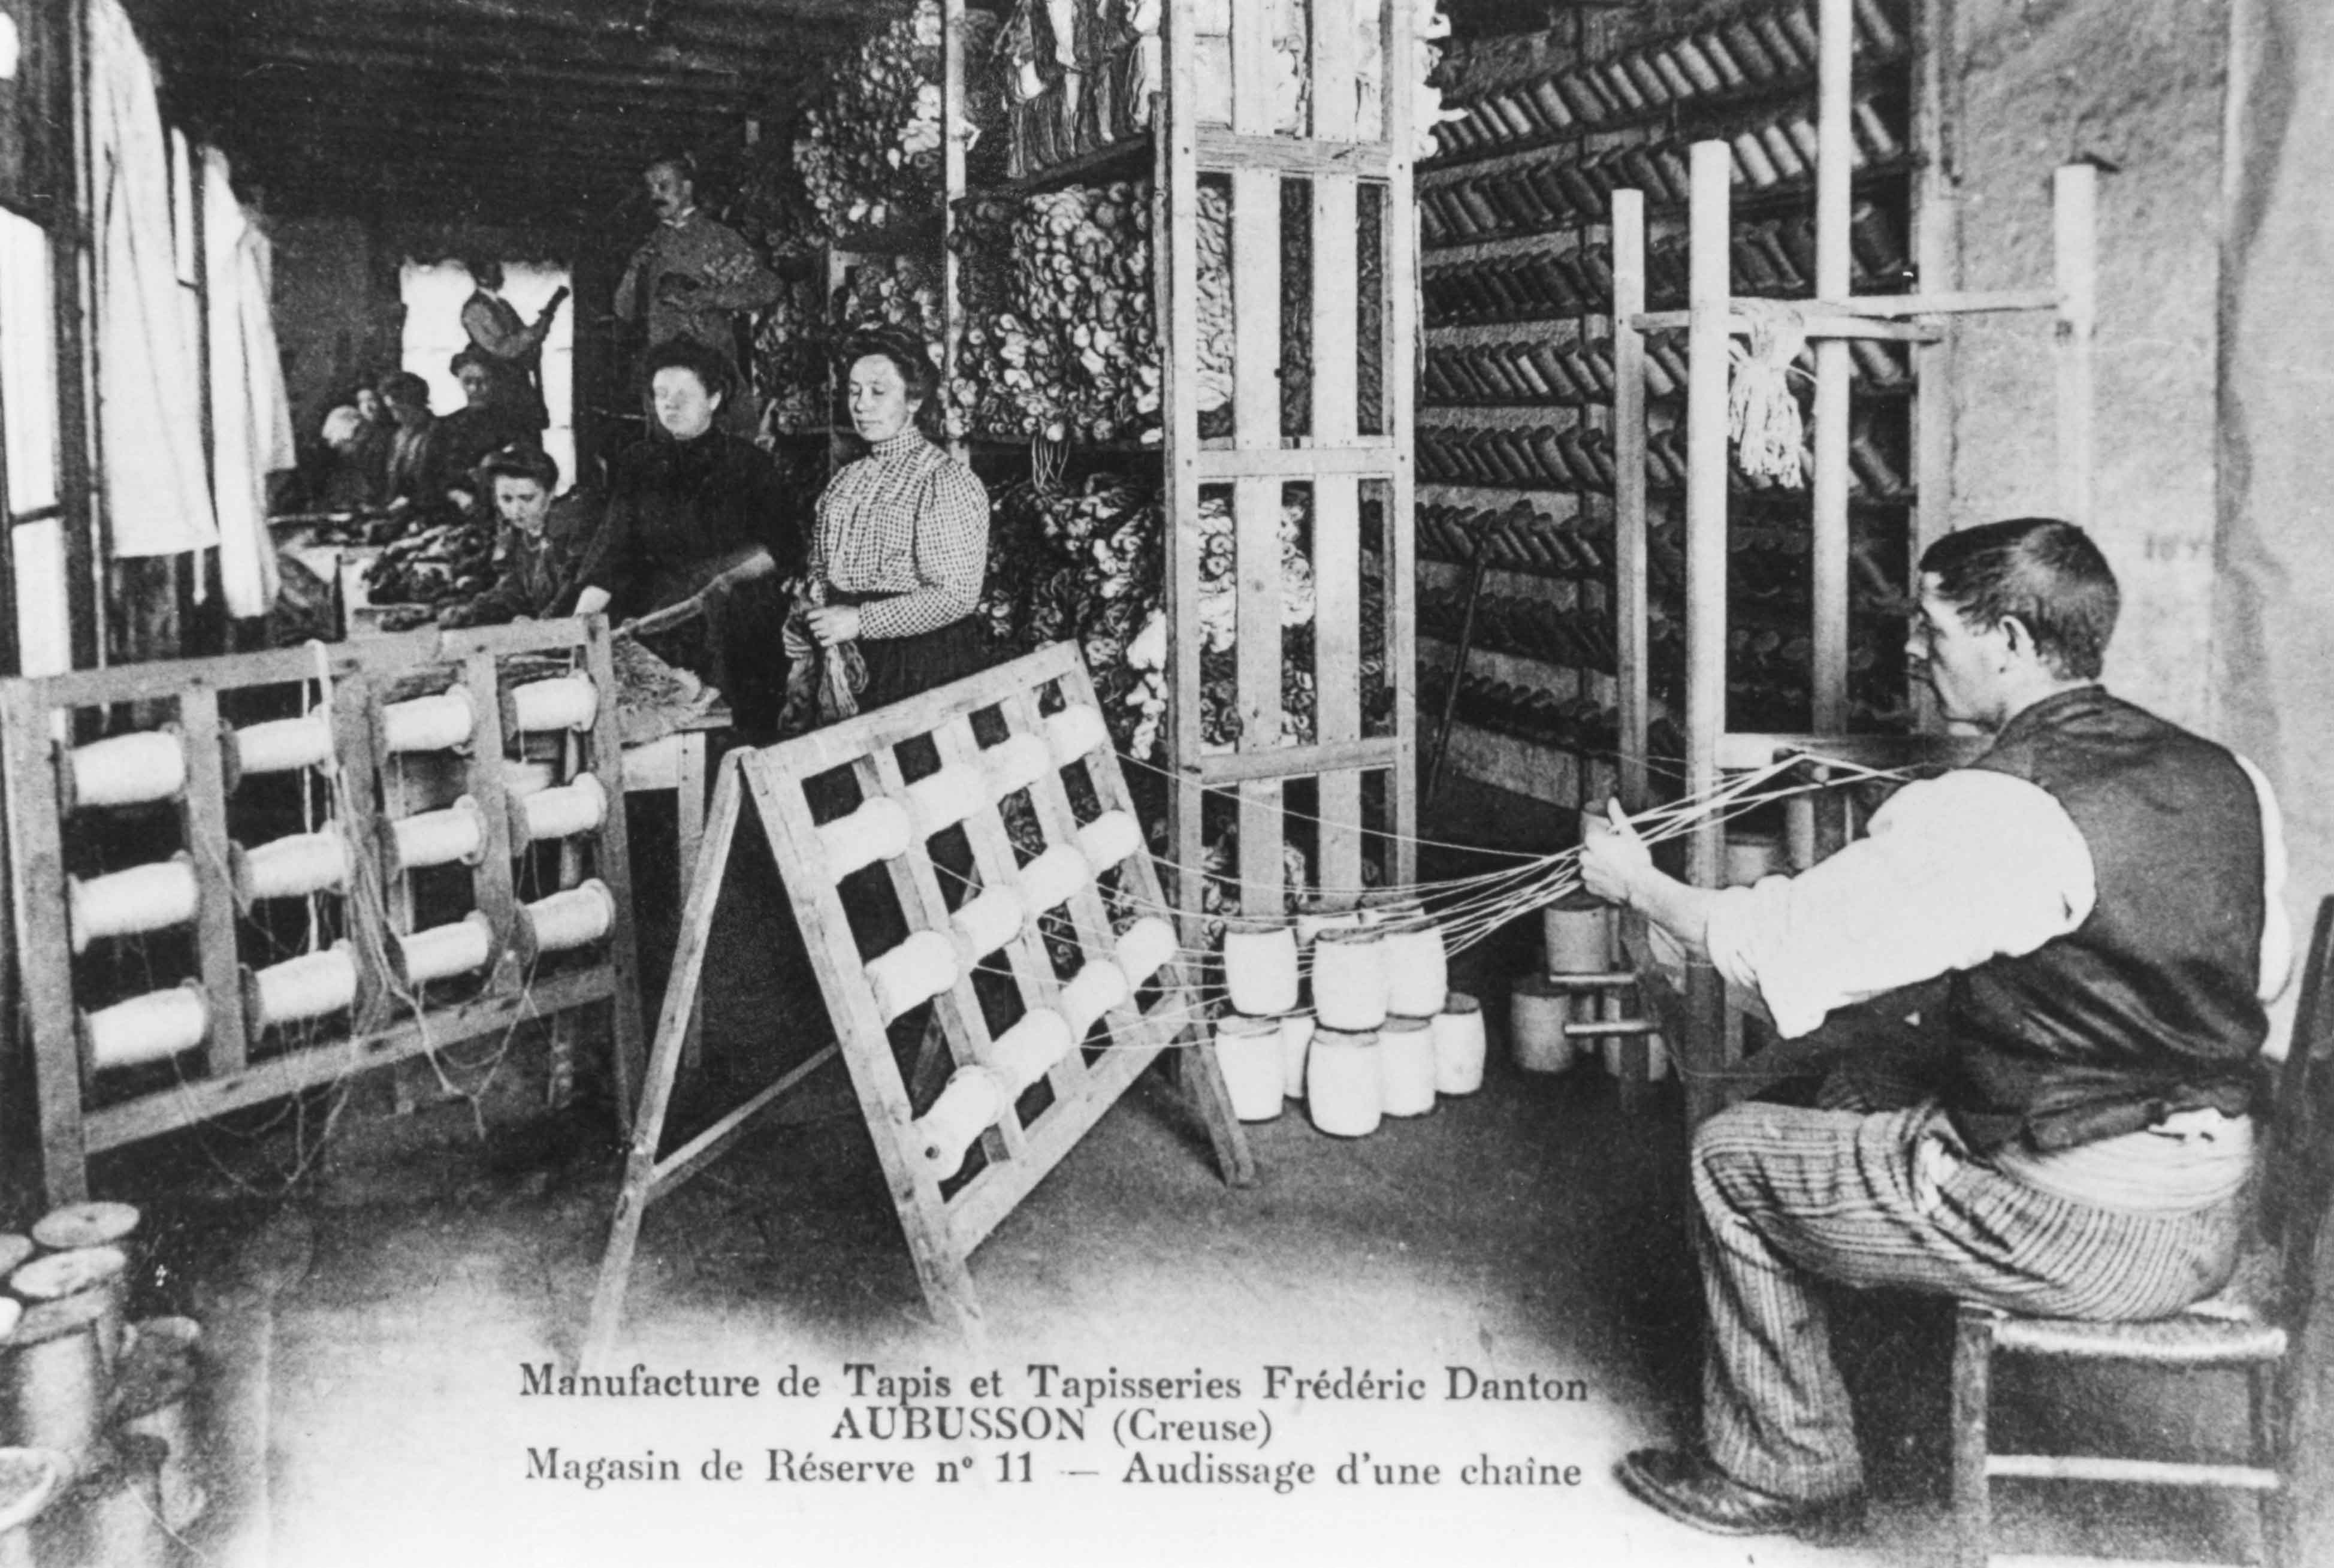 Carte postale (1er quart du 20e siècle) : l'ourdissage d'une chaîne dans le magasin de réserve n° 11 de la manufacture (Aubusson, centre de documentation du Musée départemental de la Tapisserie)